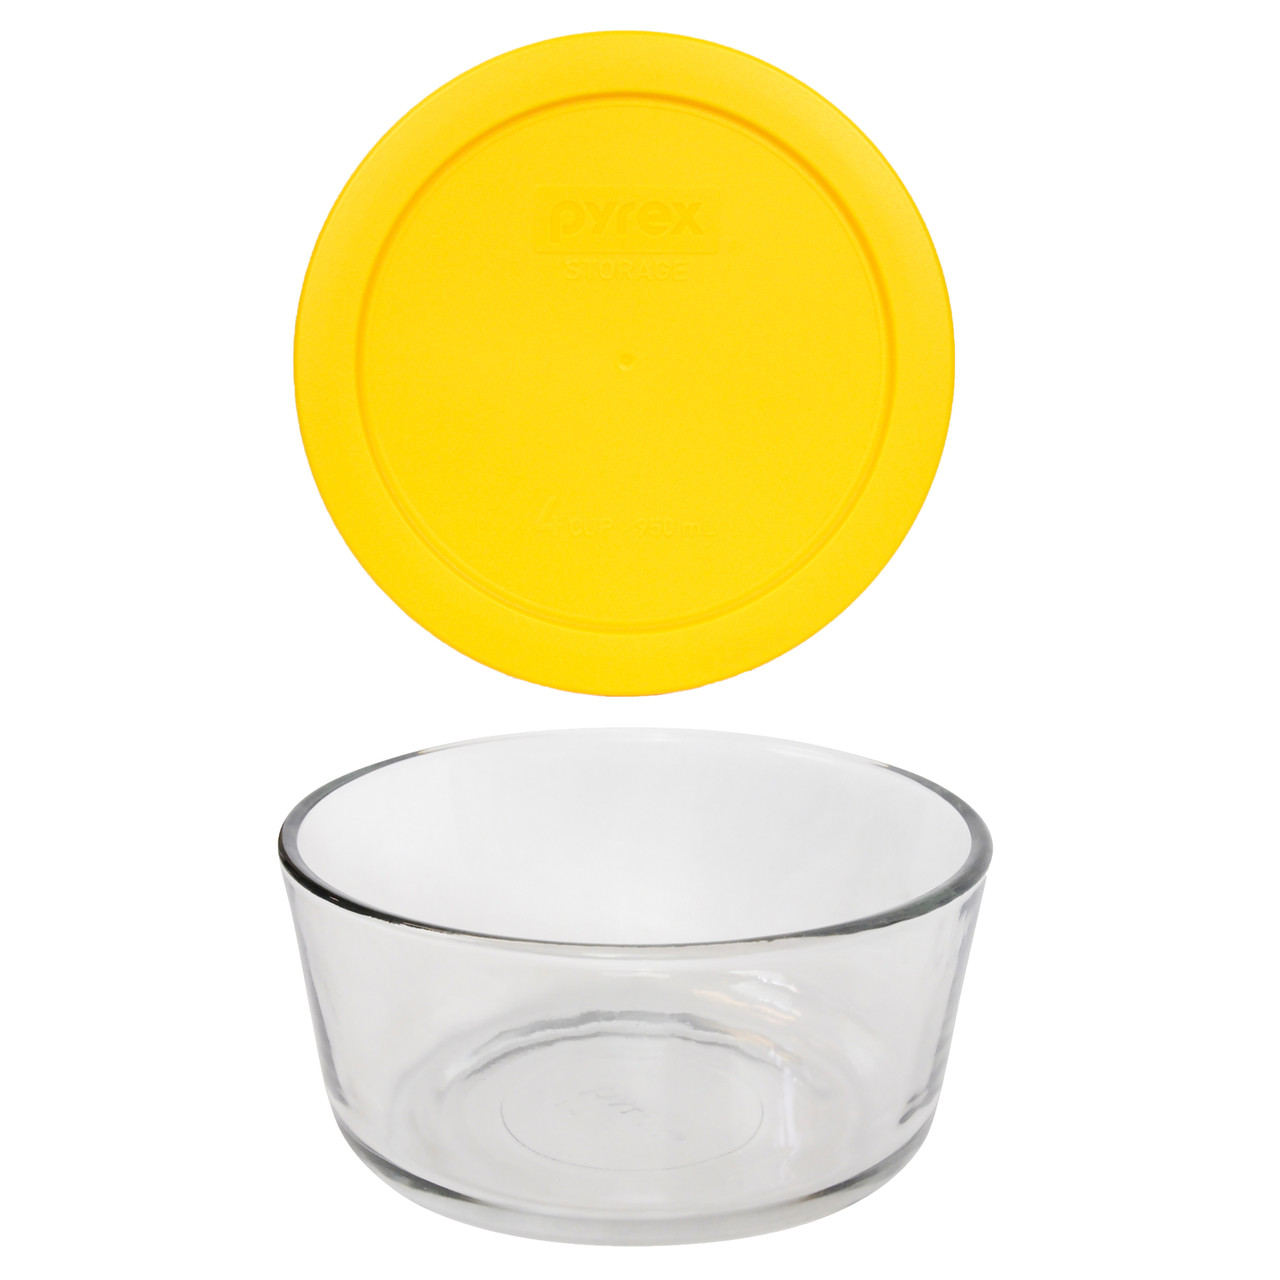 Pyrex (1) 7201 4-Cup Glass Bowl & (1) 7201-PC Meyer Lemon Yellow Lid